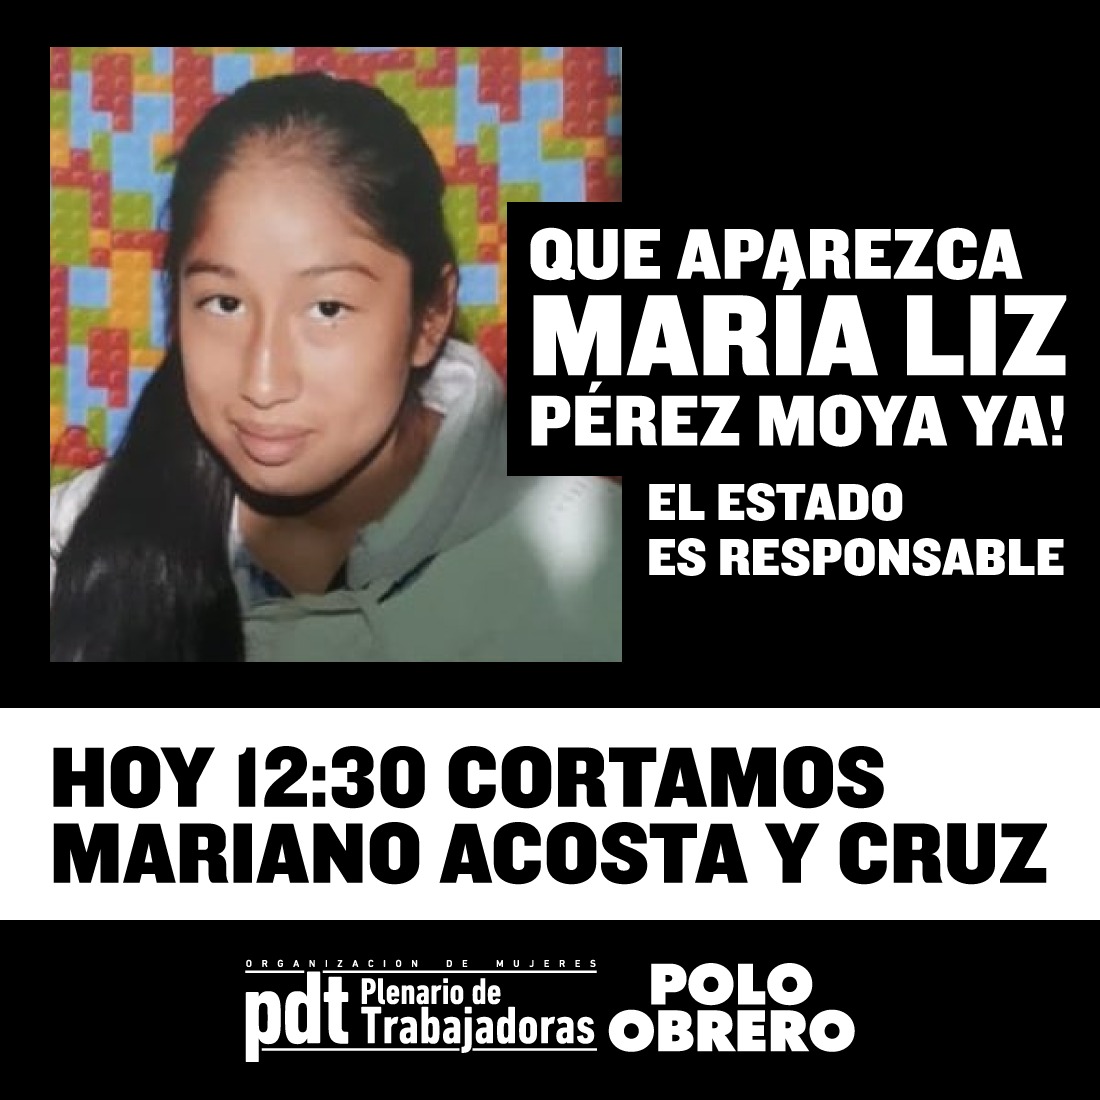 [URGENTE] Aparición ya de María Liz Pérez Moya: corte hoy a las 1230 en Mariano Acosta y Cruz